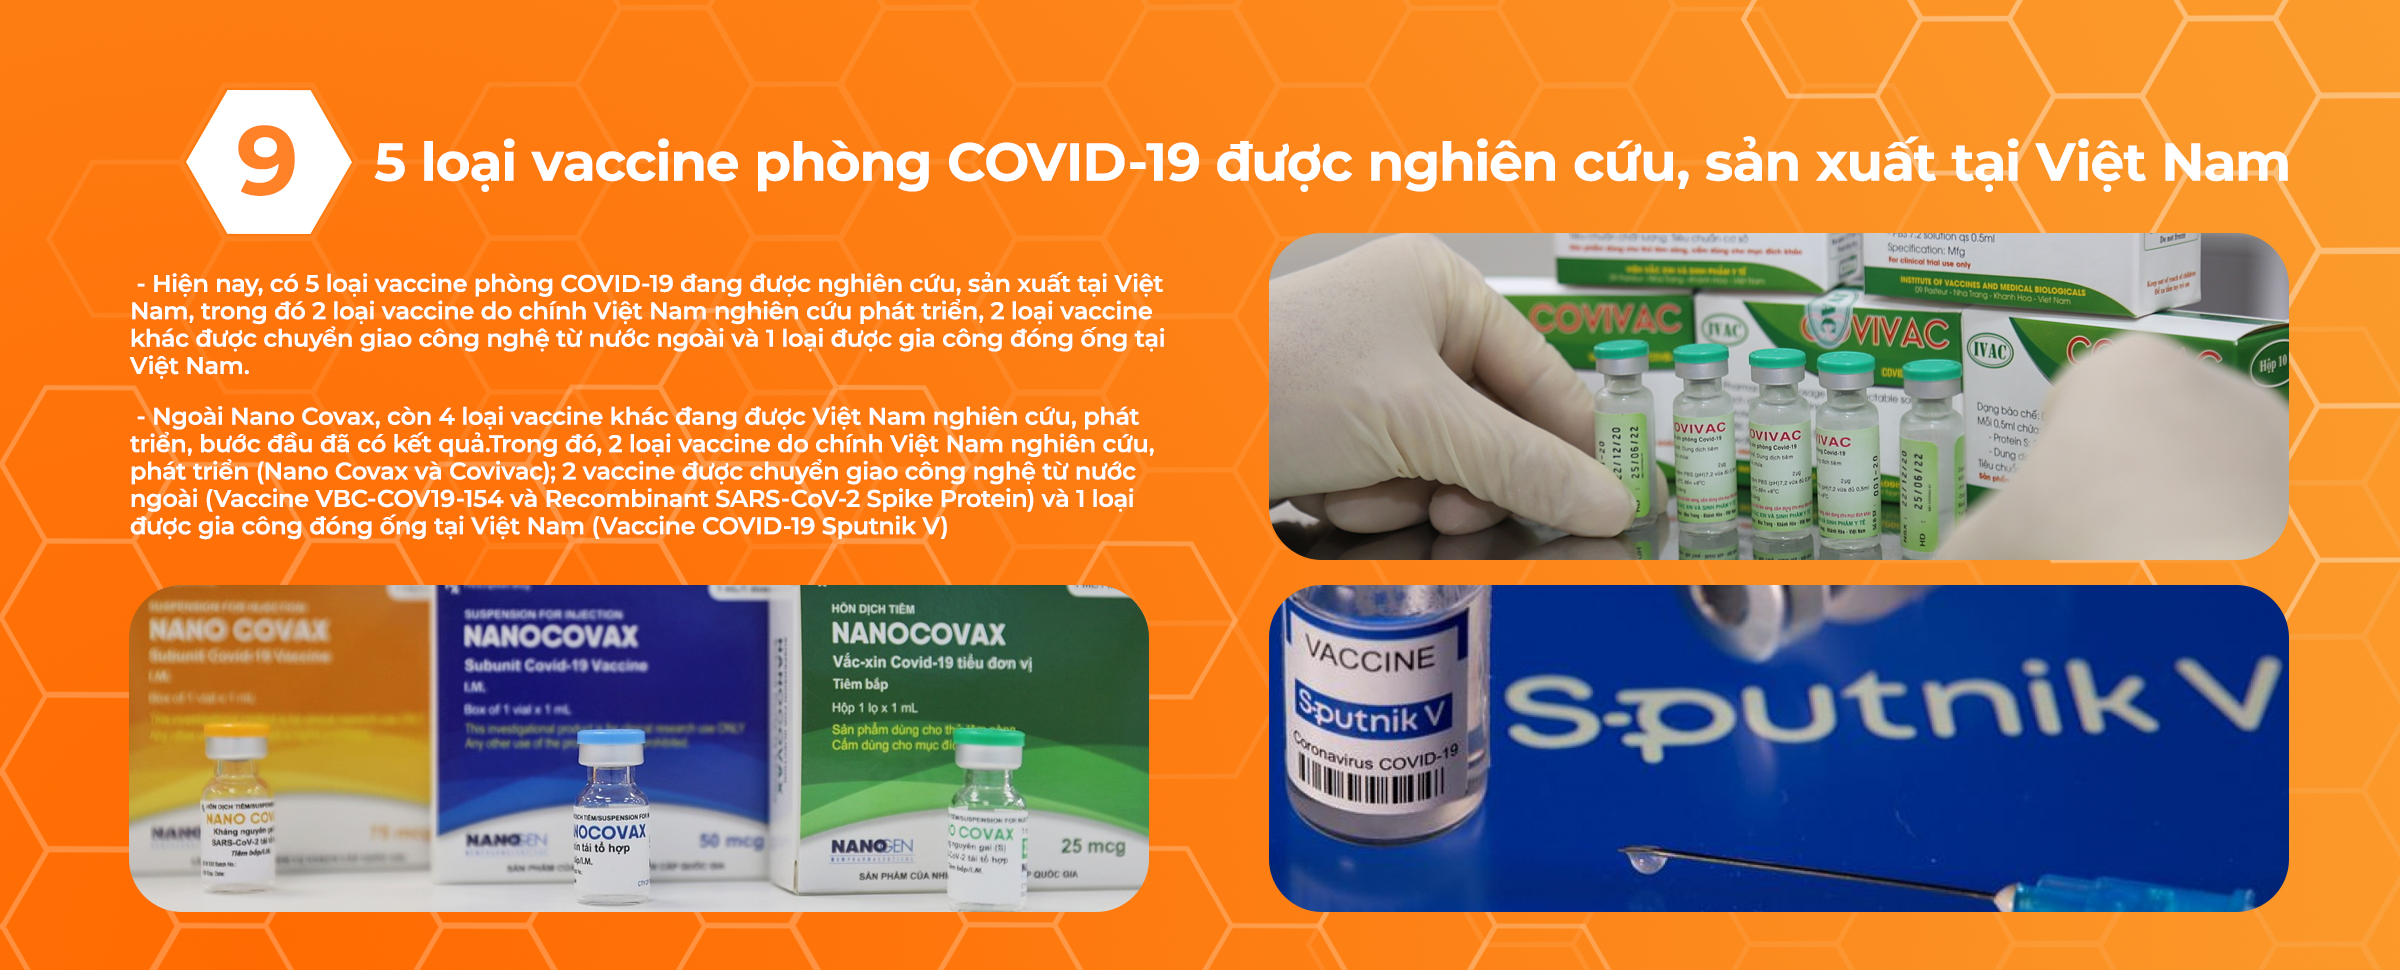 5 loại vaccine phòng COVID-19 được nghiên cứu, sản xuất tại Việt Nam